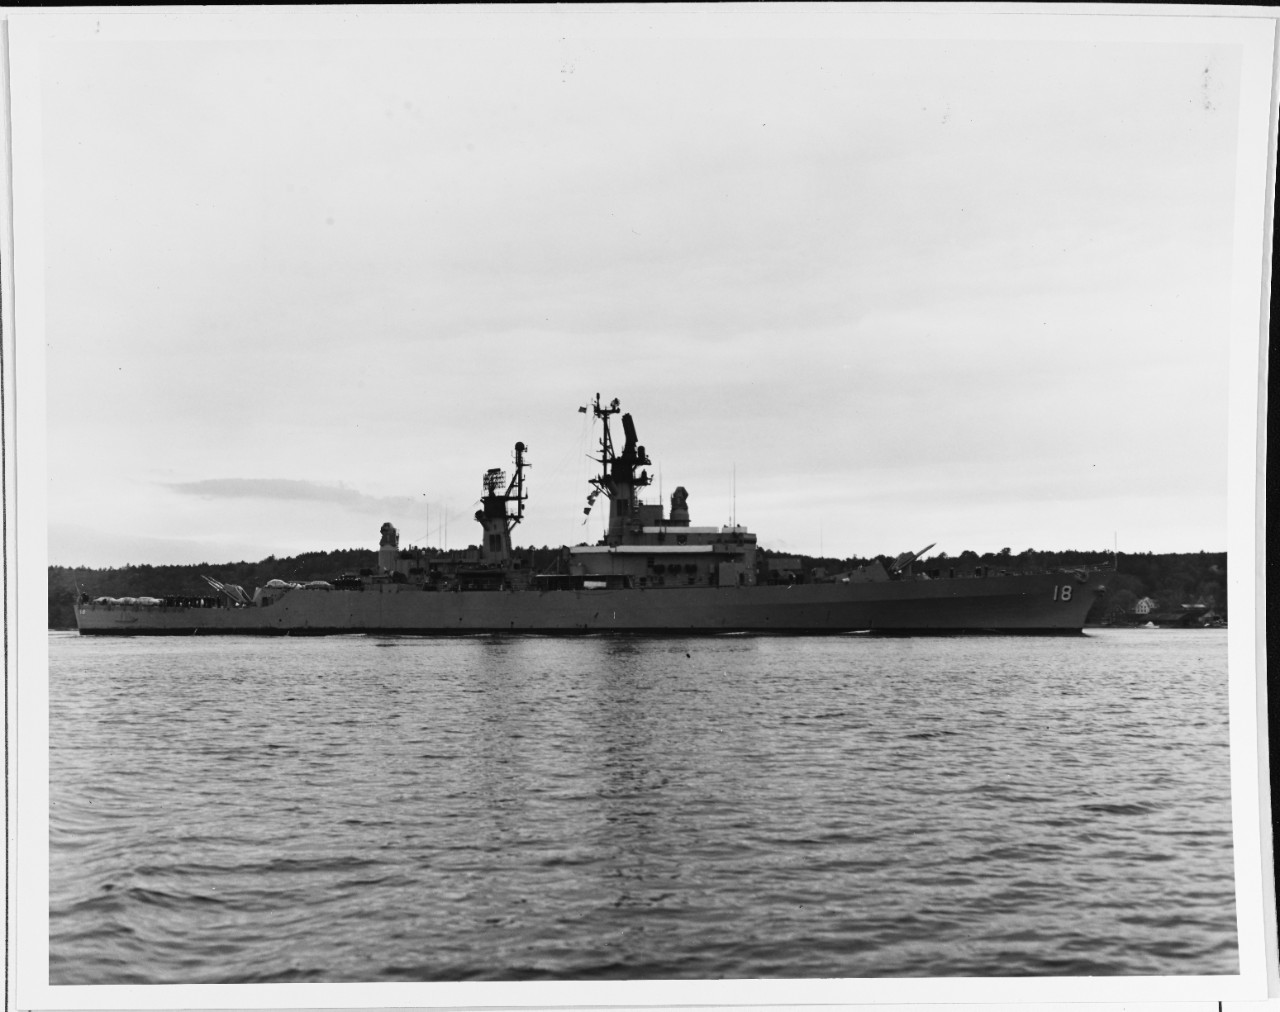 USS WORDEN (DLG-18)